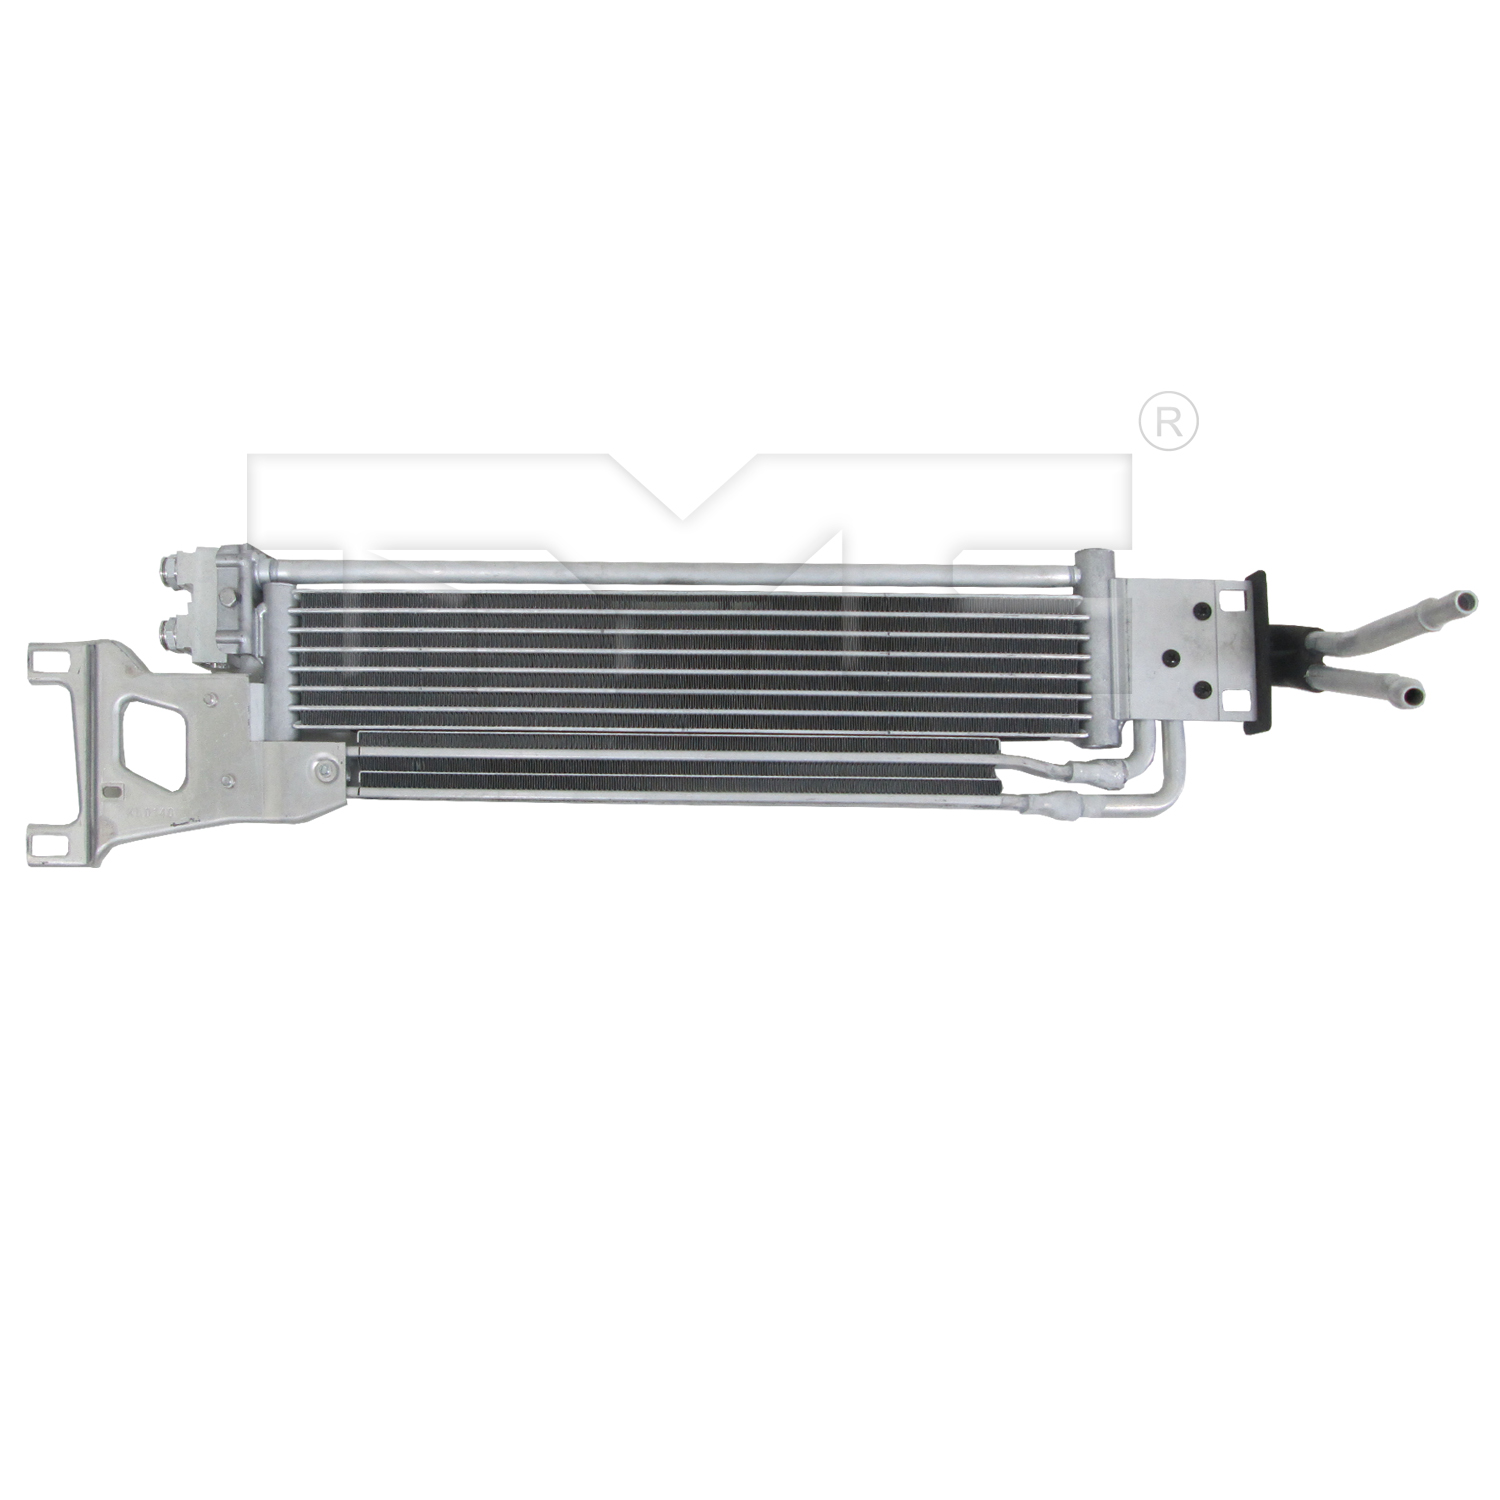 Aftermarket RADIATORS for MERCEDES-BENZ - E350, E350,11-13,Transmission cooler assembly